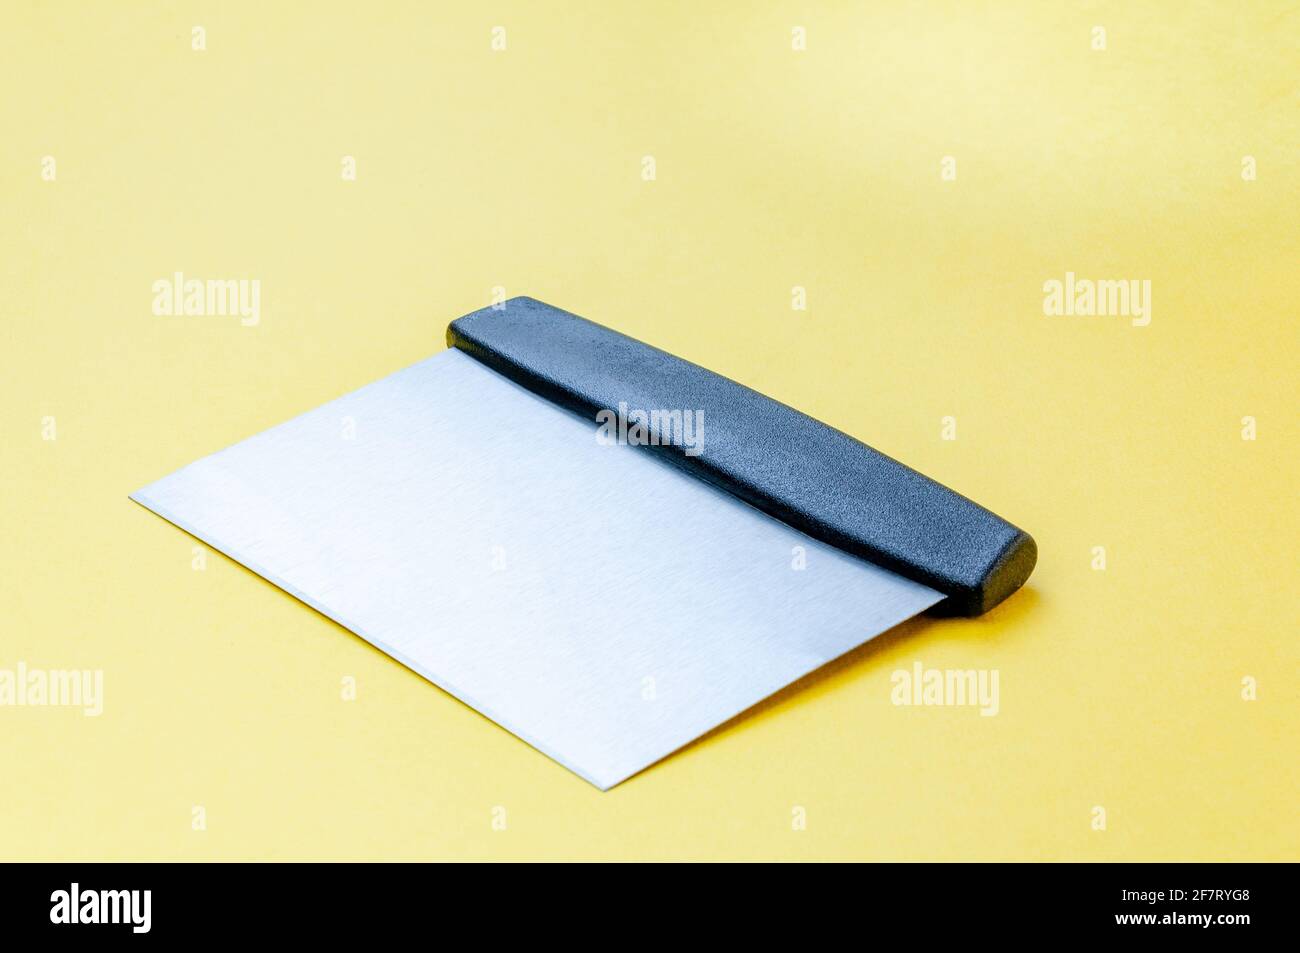 Metall-Teig Schaber Messer über hellgelben Oberfläche Hintergrund. Flacher Teigschaber aus Edelstahl mit Kunststoffgriff Stockfoto